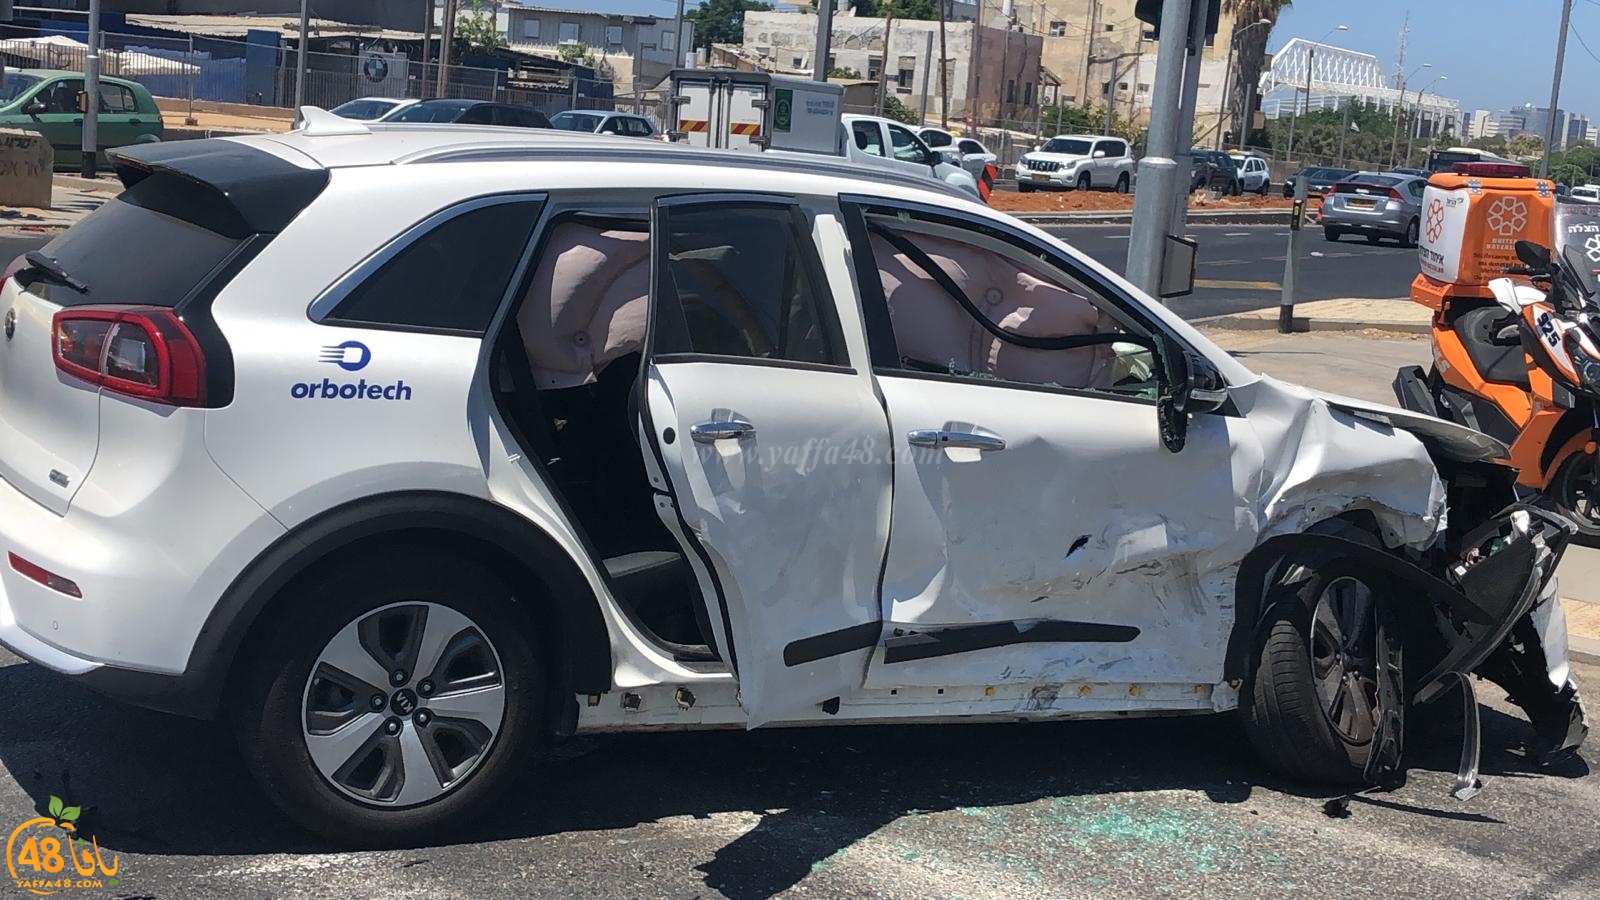  فيديو: 5 اصابات متفاوتة بحادث طرق بين مركبتين في يافا 